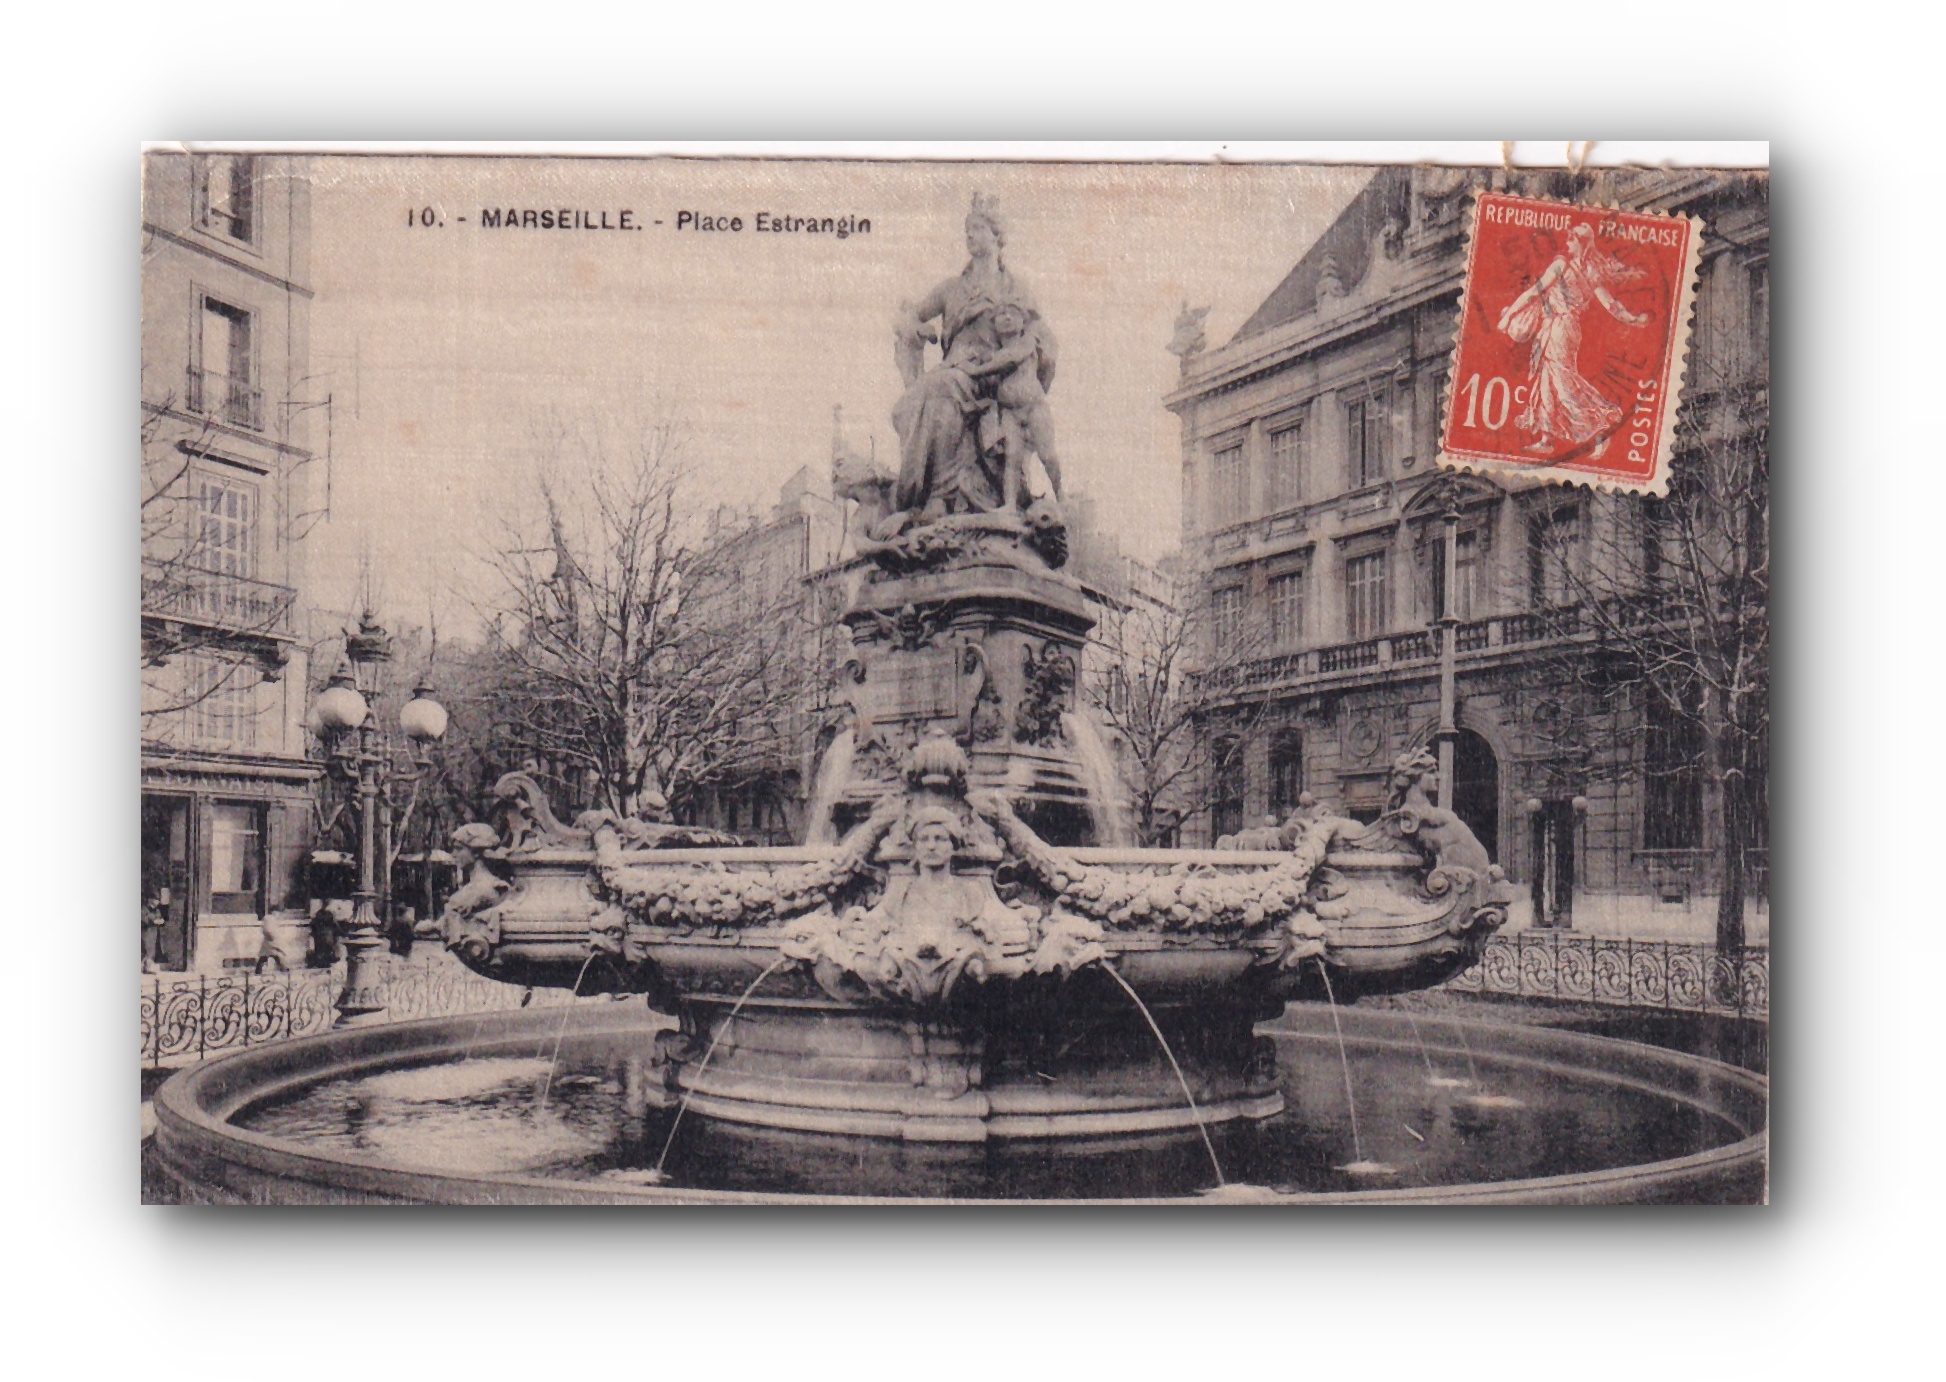 - Place Estrangia -MARSEILLE - 21.11.1910 -